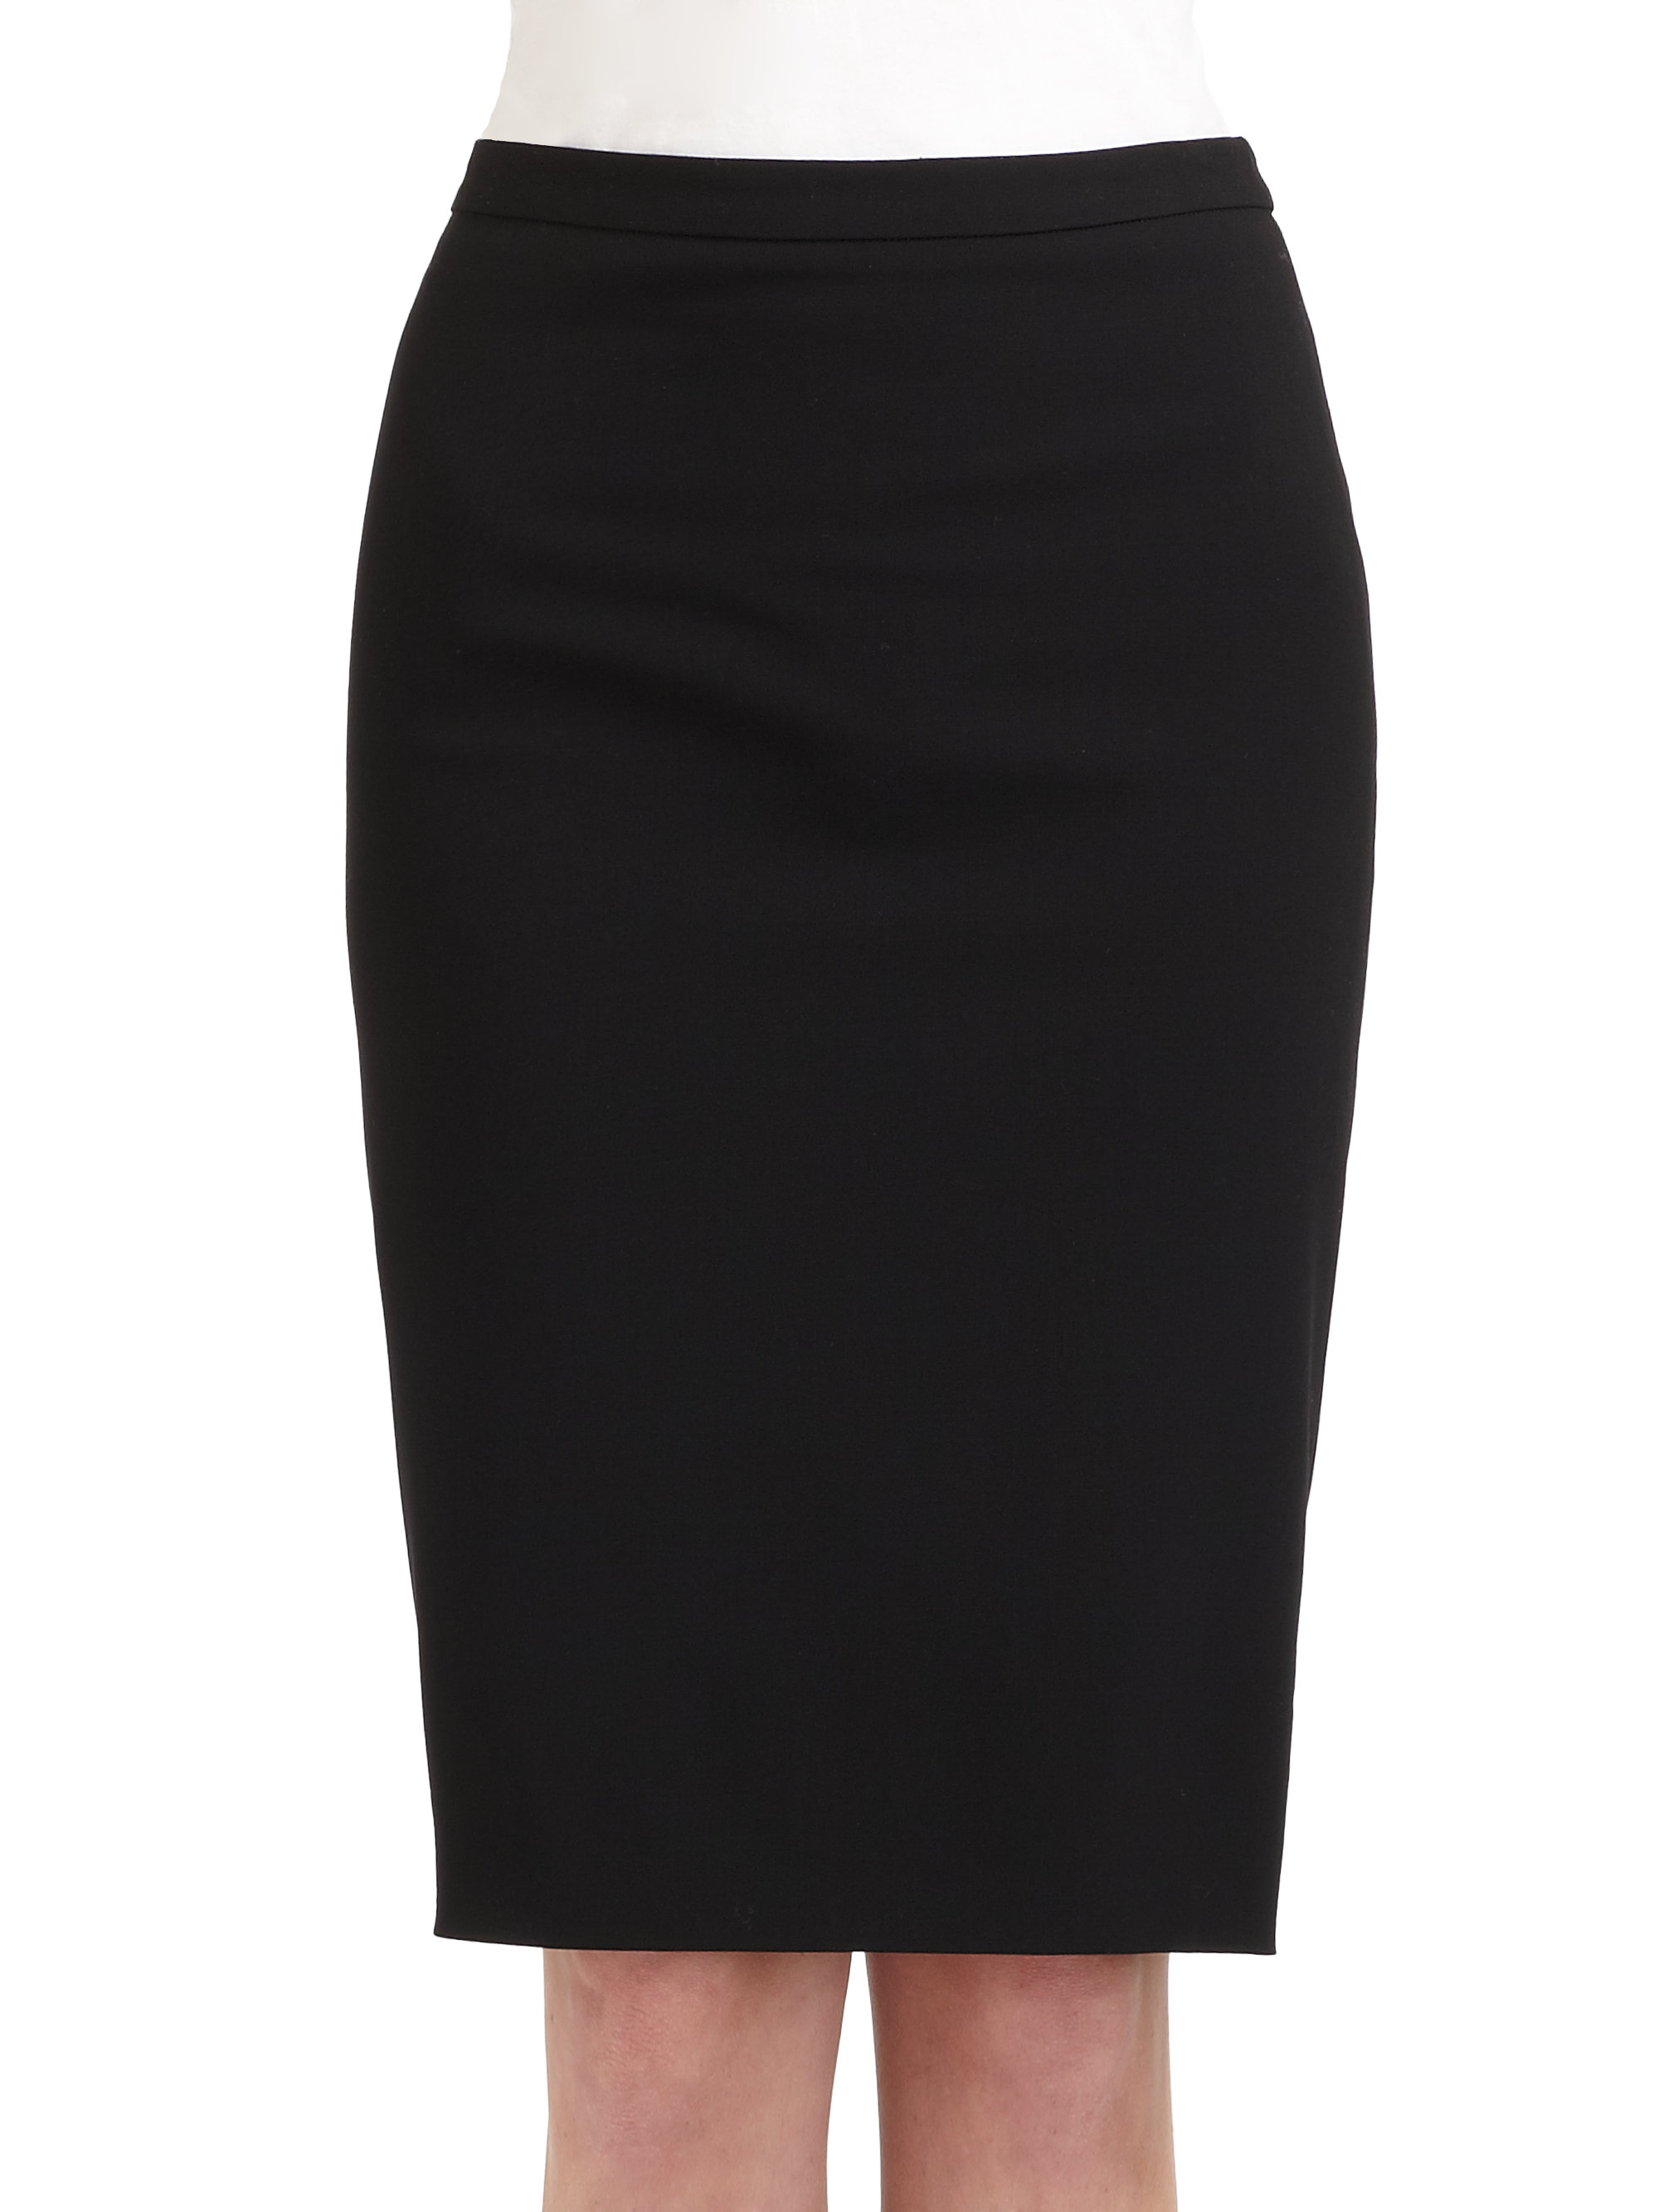 Lyst - Giorgio Armani Pencil Skirt in Black